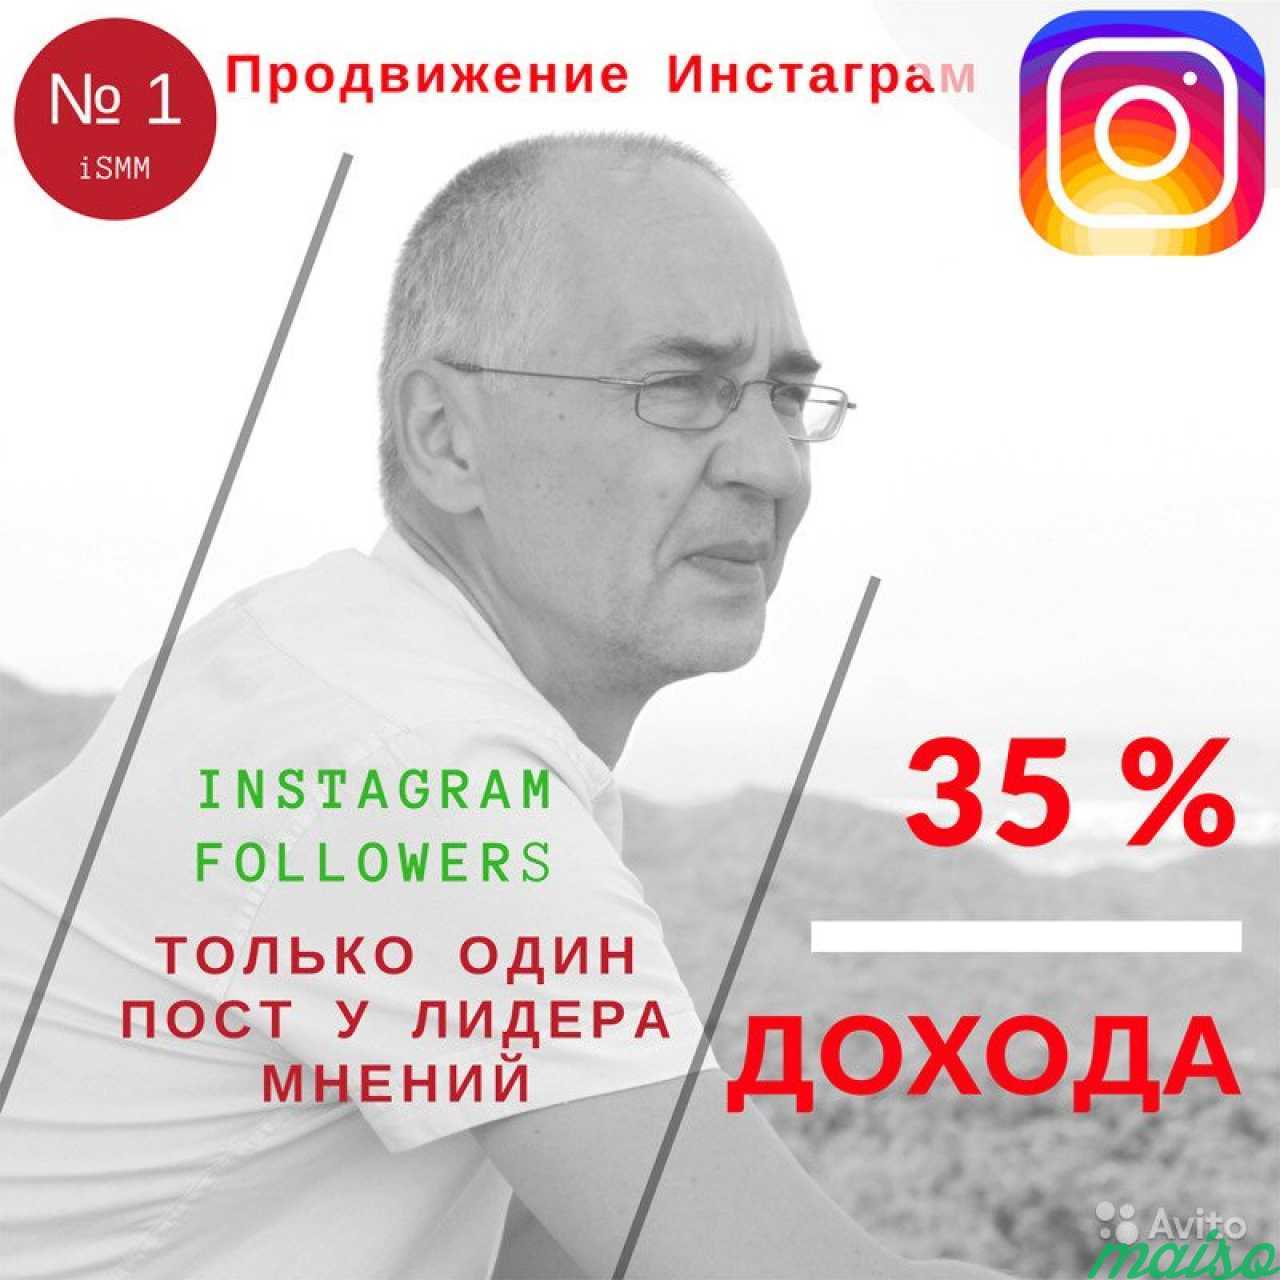 Раскрутка и продвижение Инстаграм Реклама Фейсбук в Санкт-Петербурге. Фото 1